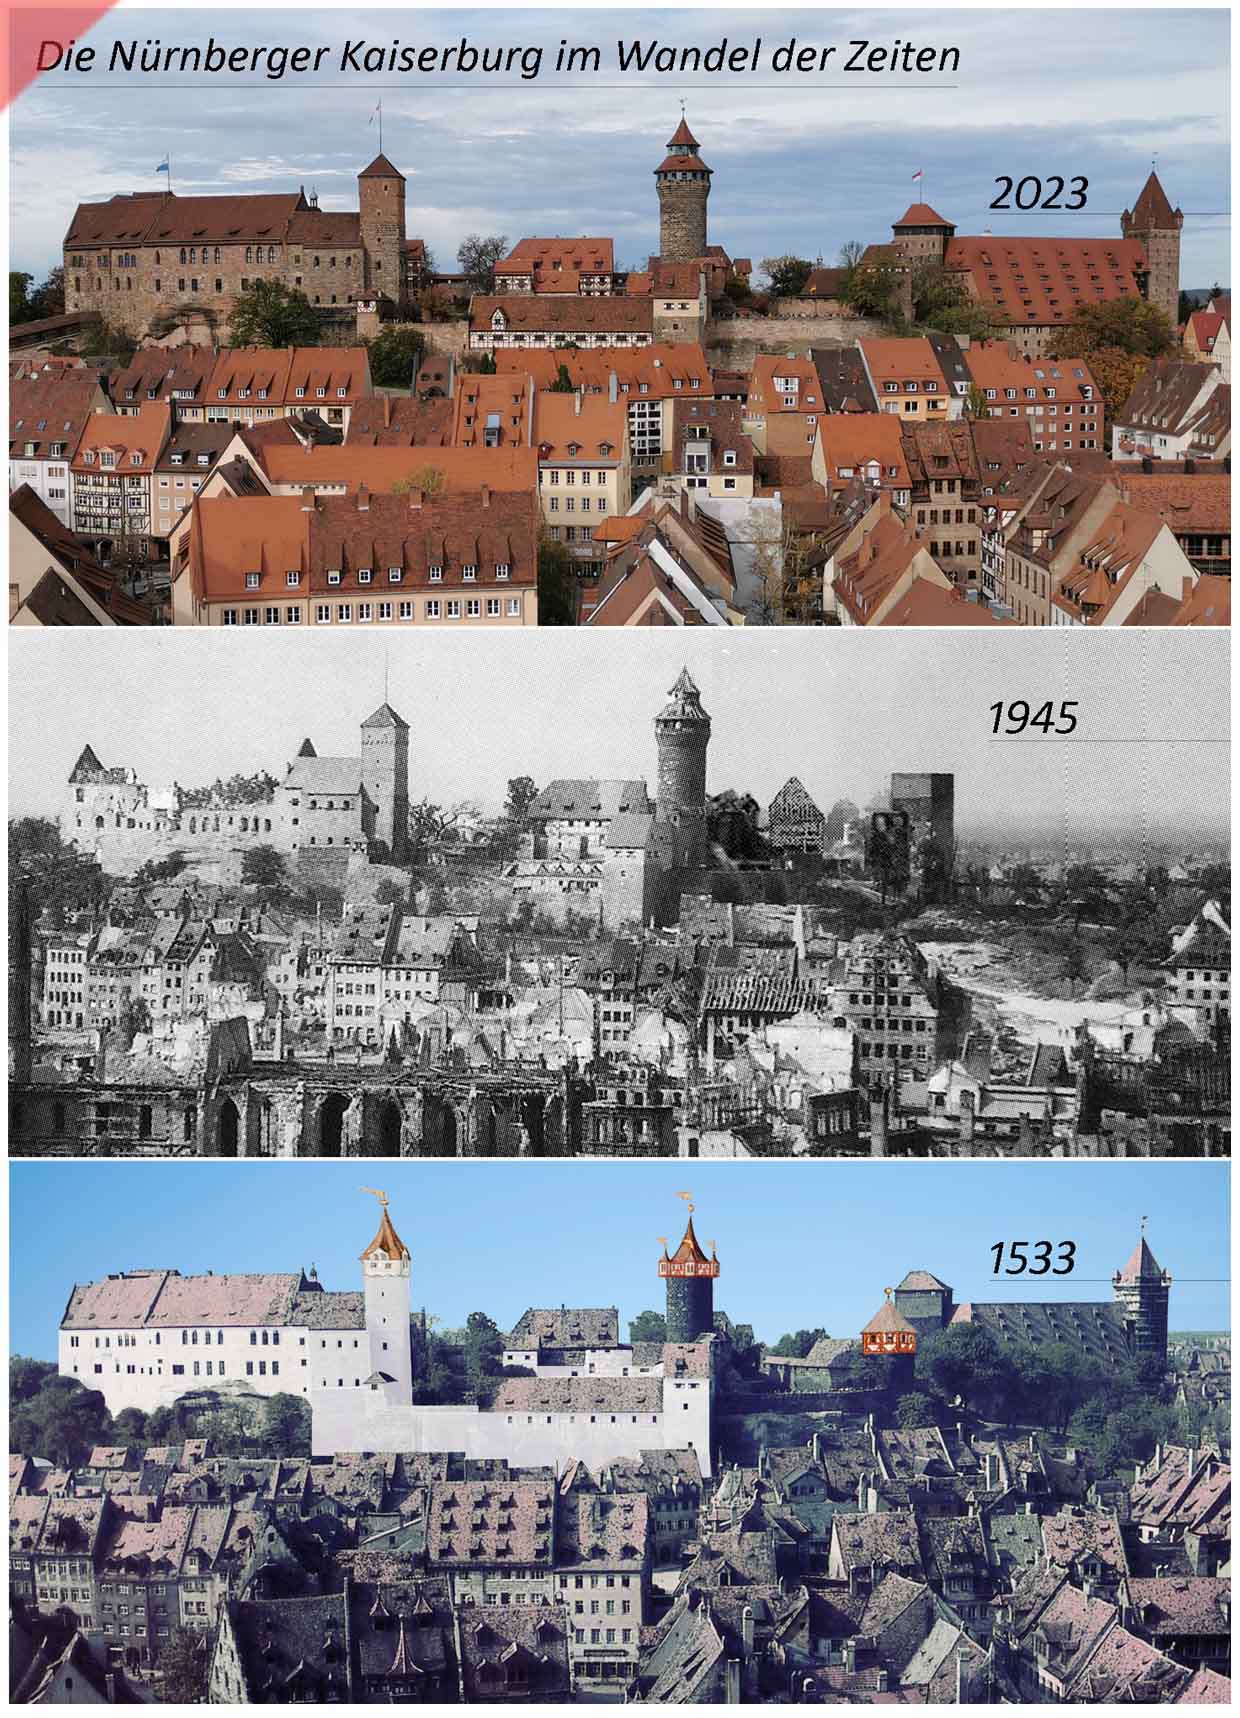 Kaiserburg-Burg-Nuernberg-Baugeschichte-2022-1945-1533-Damals-1945-Jetzt-Vergleich-gekalkte-Mauern-Sinvellturm-Heidenturm